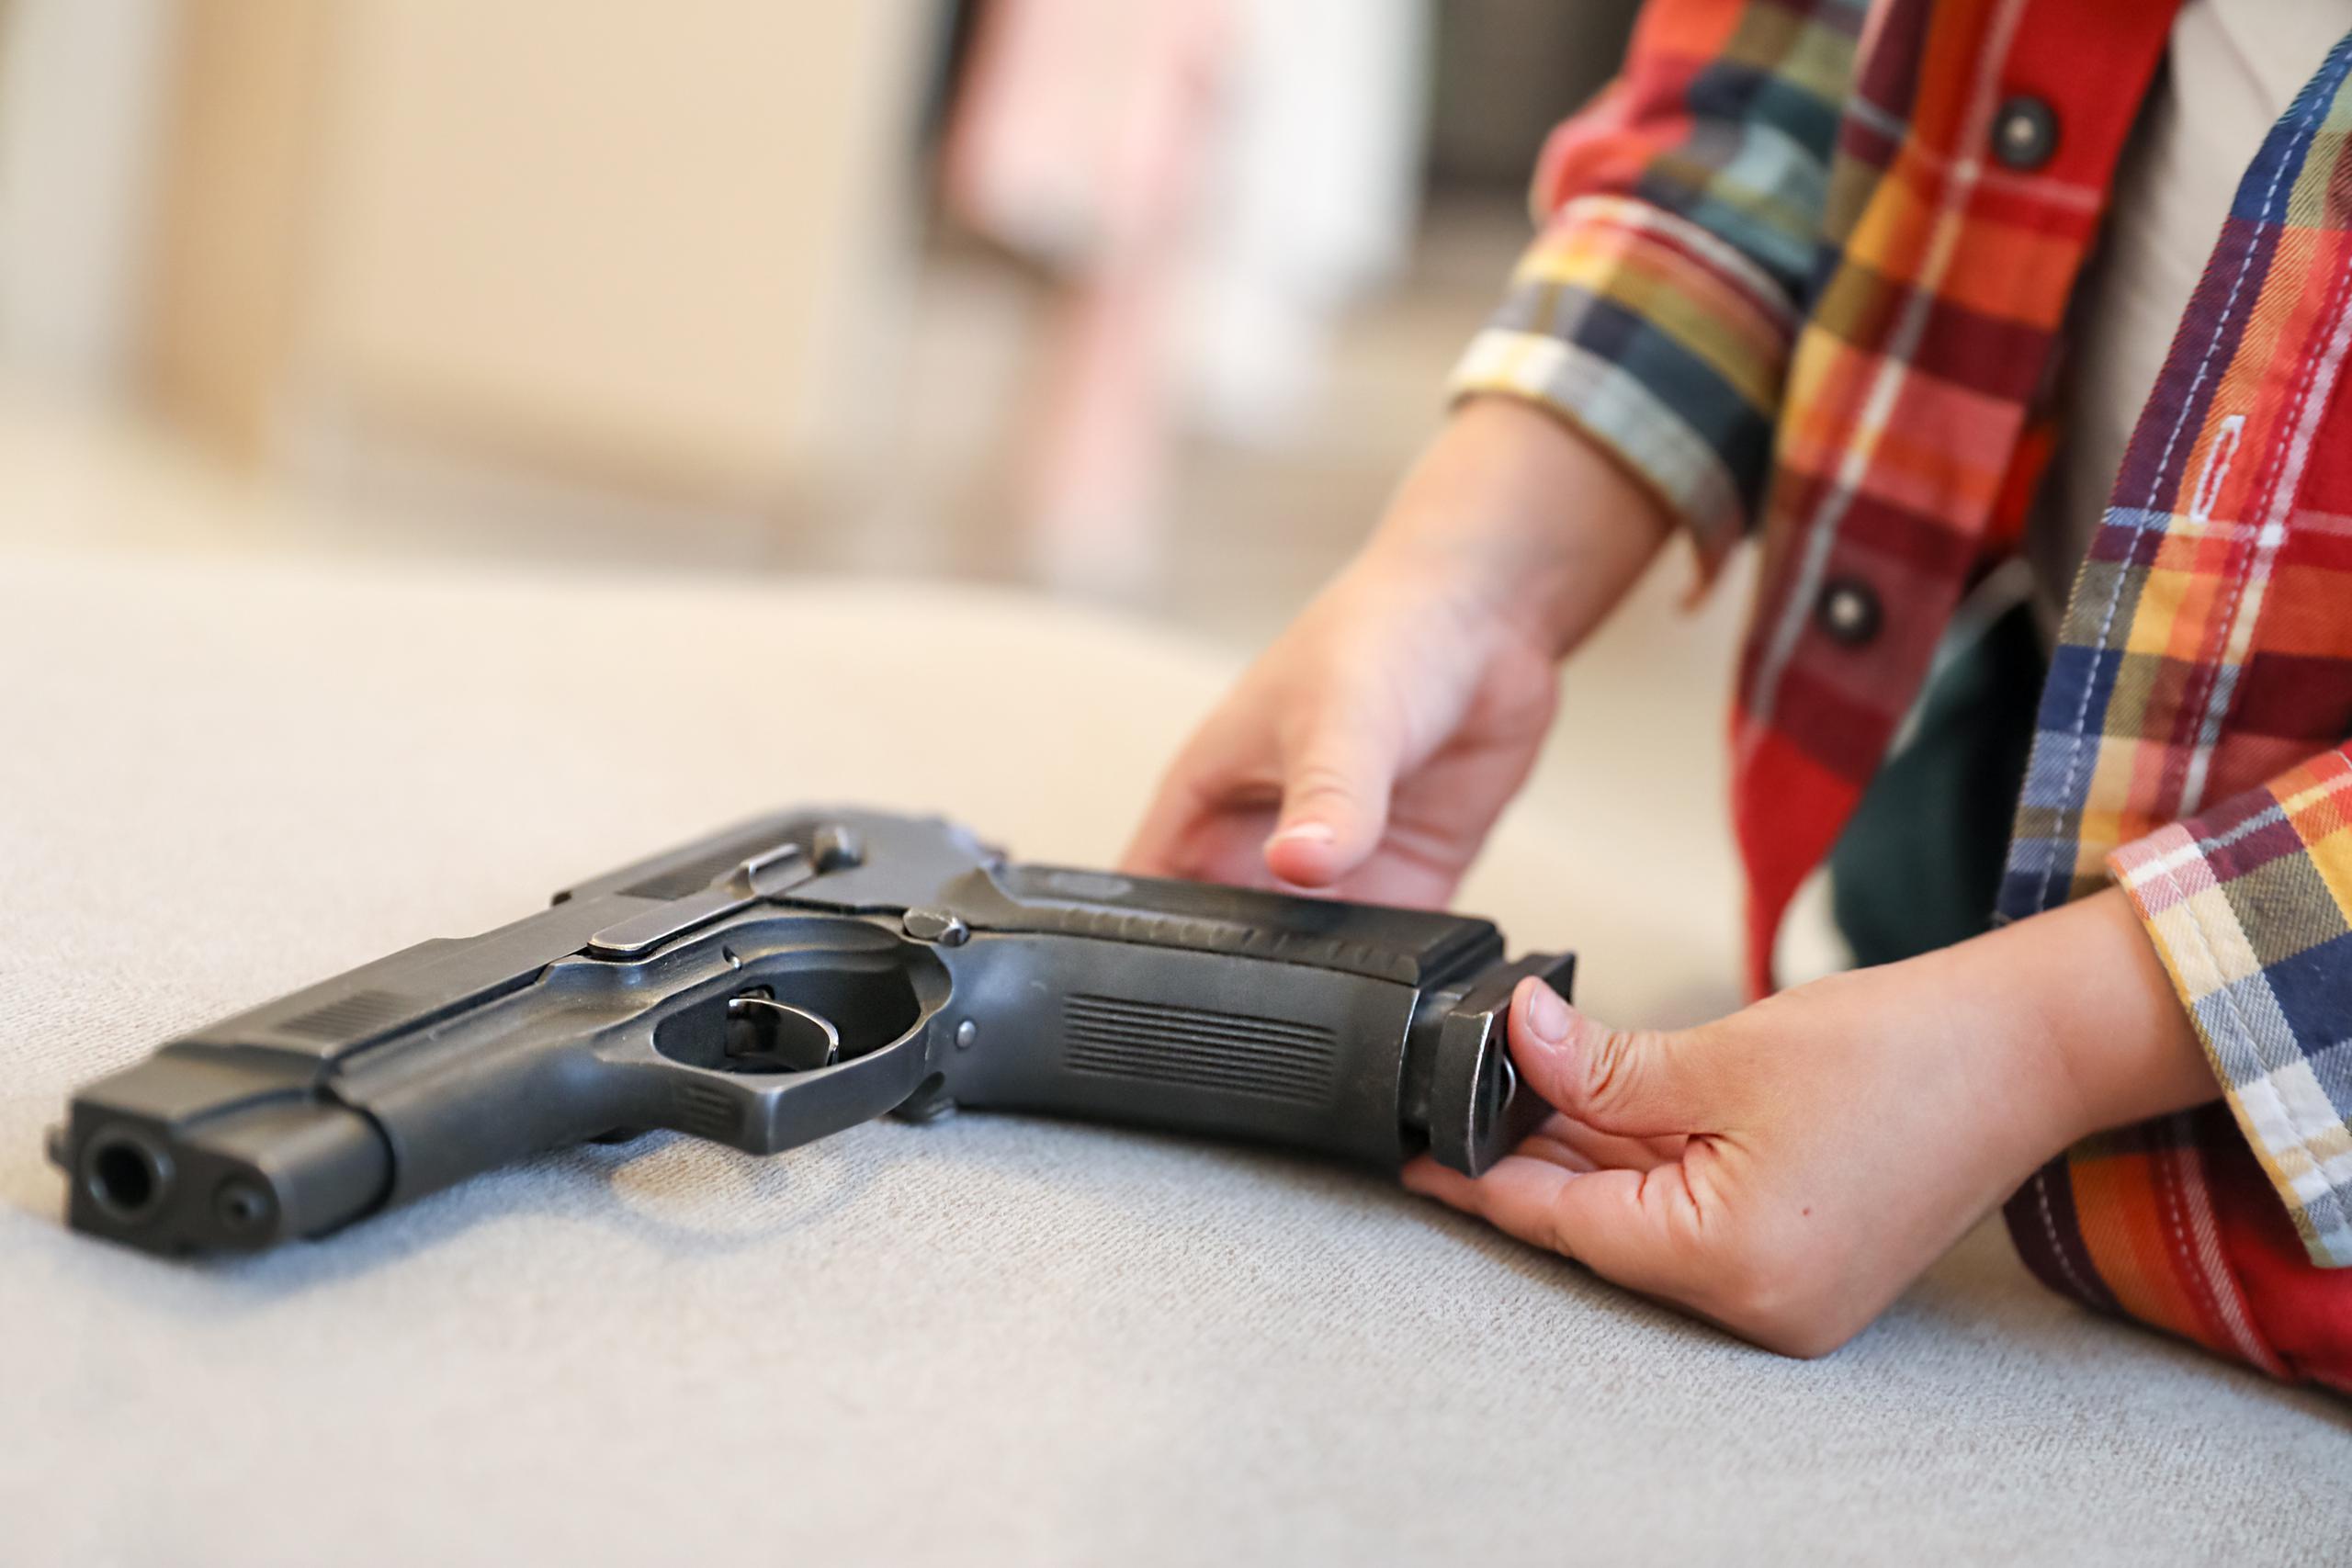 El tiroteo se produjo seis semanas después de que entrara en vigor una nueva ley en Michigan, que obliga a los propietarios a mantener las armas bajo llave cuando hay menores presentes.